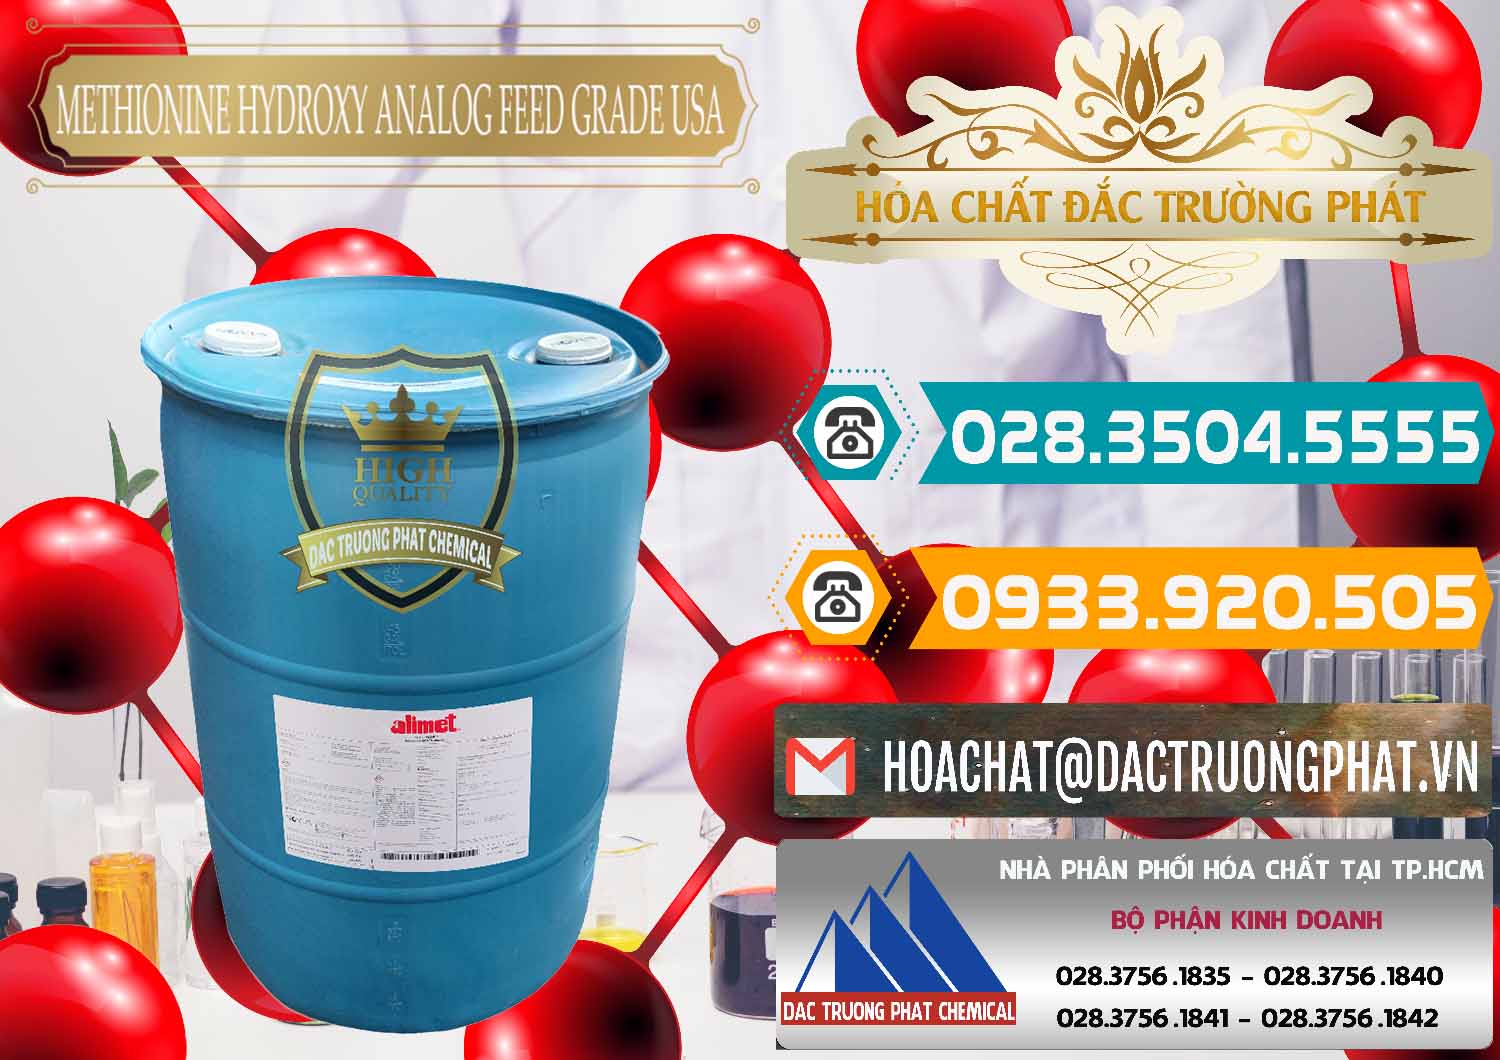 Nơi chuyên bán - cung cấp Methionine Nước - Dạng Lỏng Novus Alimet Mỹ USA - 0316 - Công ty chuyên bán - phân phối hóa chất tại TP.HCM - congtyhoachat.vn